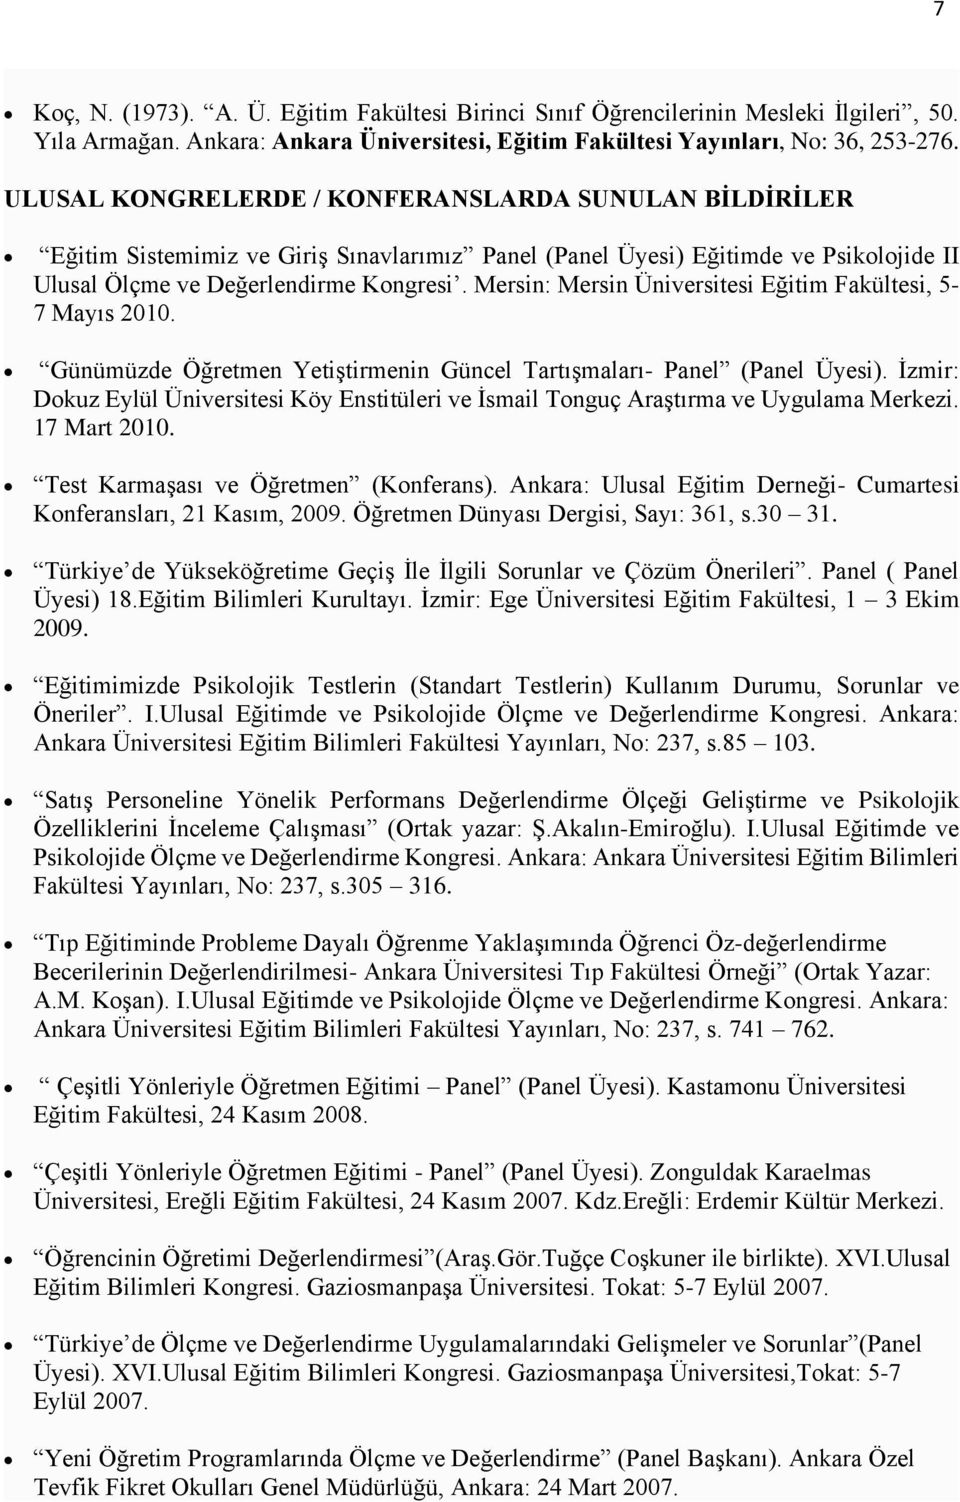 Mersin: Mersin Üniversitesi Eğitim Fakültesi, 5-7 Mayıs 2010. Günümüzde Öğretmen Yetiştirmenin Güncel Tartışmaları- Panel (Panel Üyesi).